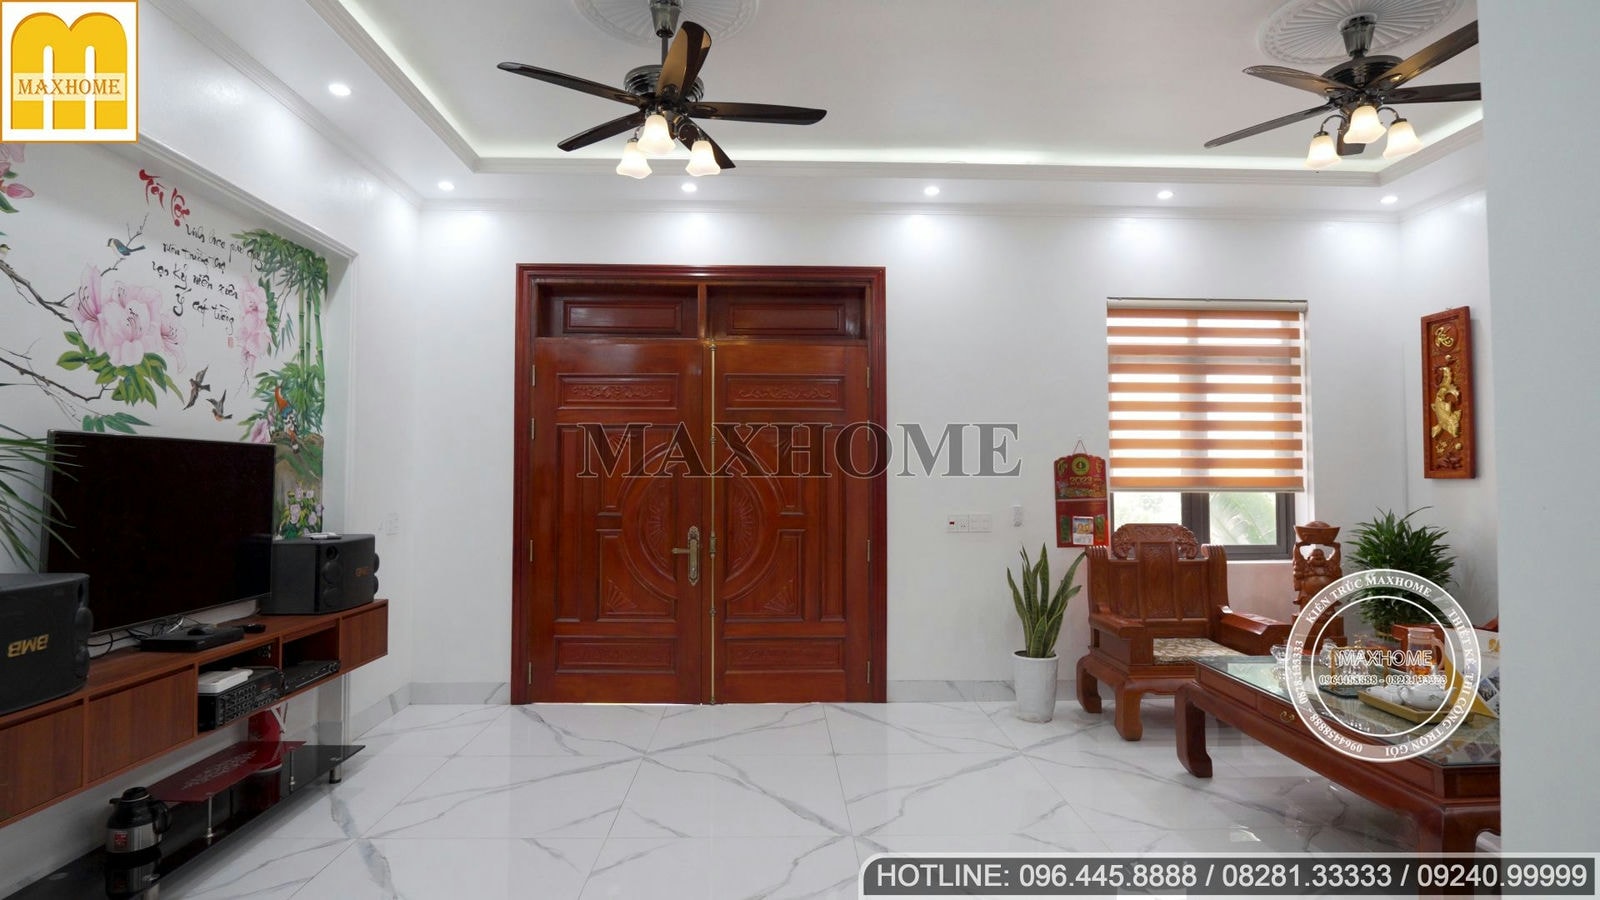 Trọn bộ nội thất giá rẻ và đẹp cho căn biệt thự hiện đại | MH01708